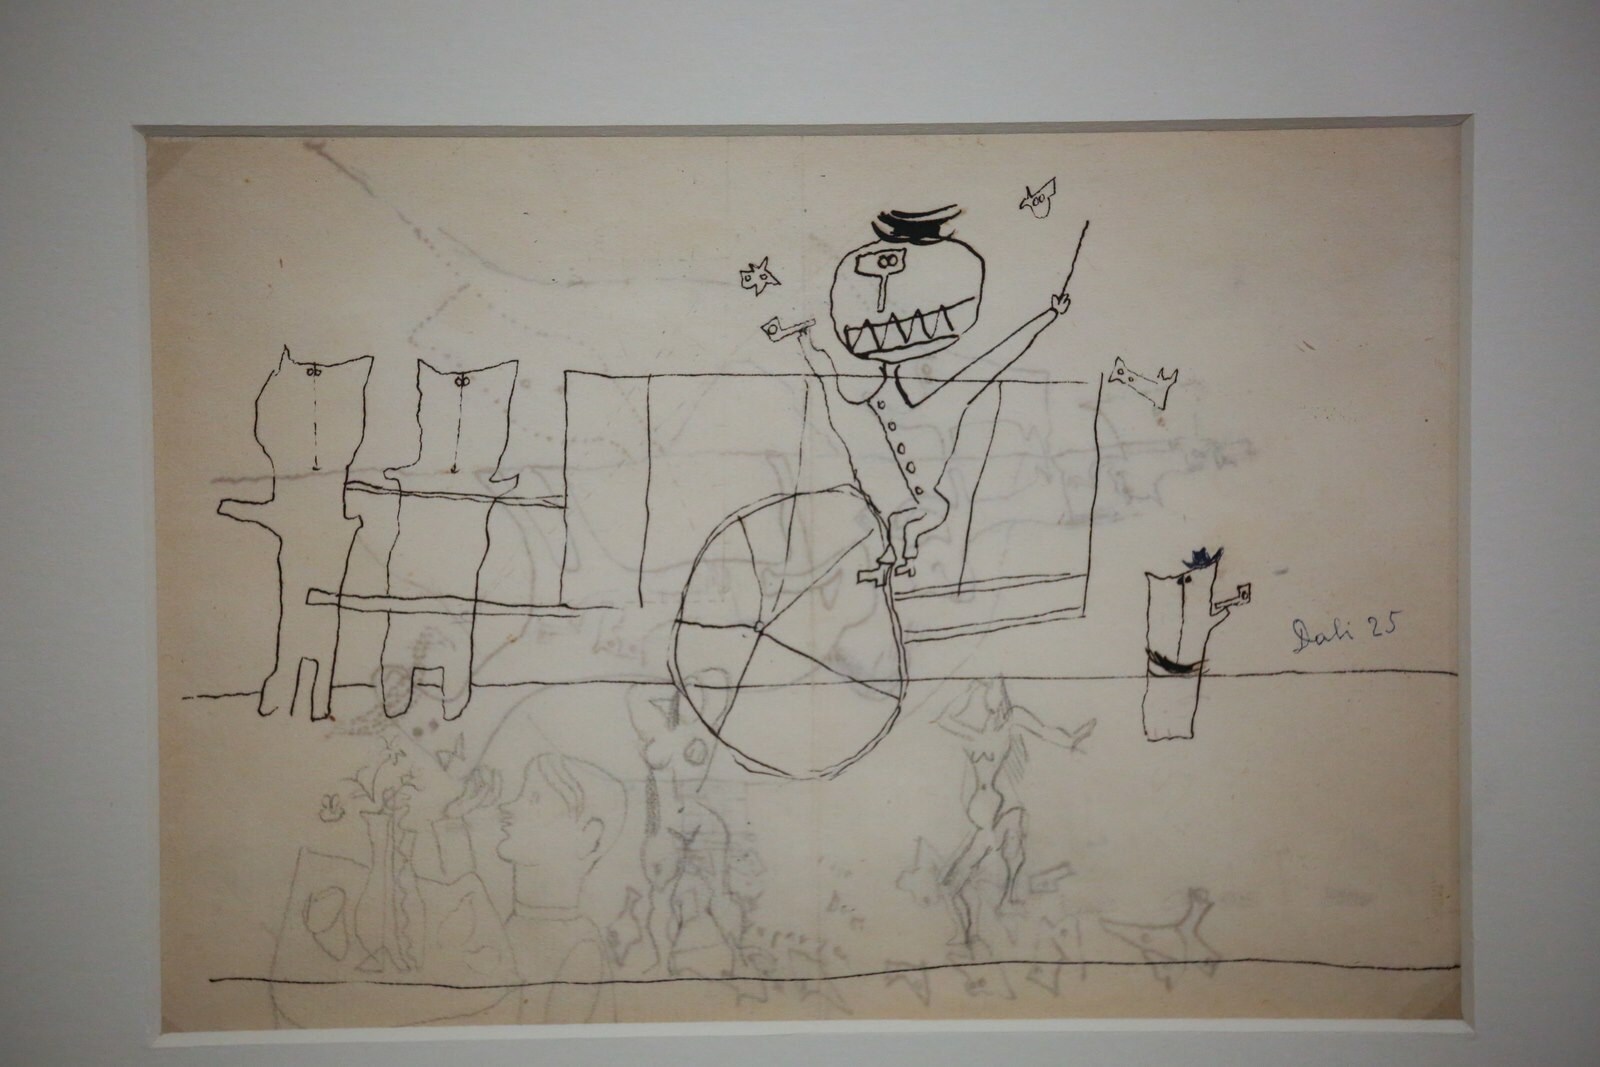 'La carreta', uno de los dibujos de Dalí que conforman la famosa serie de 'Los putrefactos'. Depósito del Museo Reina Sofía en la Residencia de Estudiantes. 